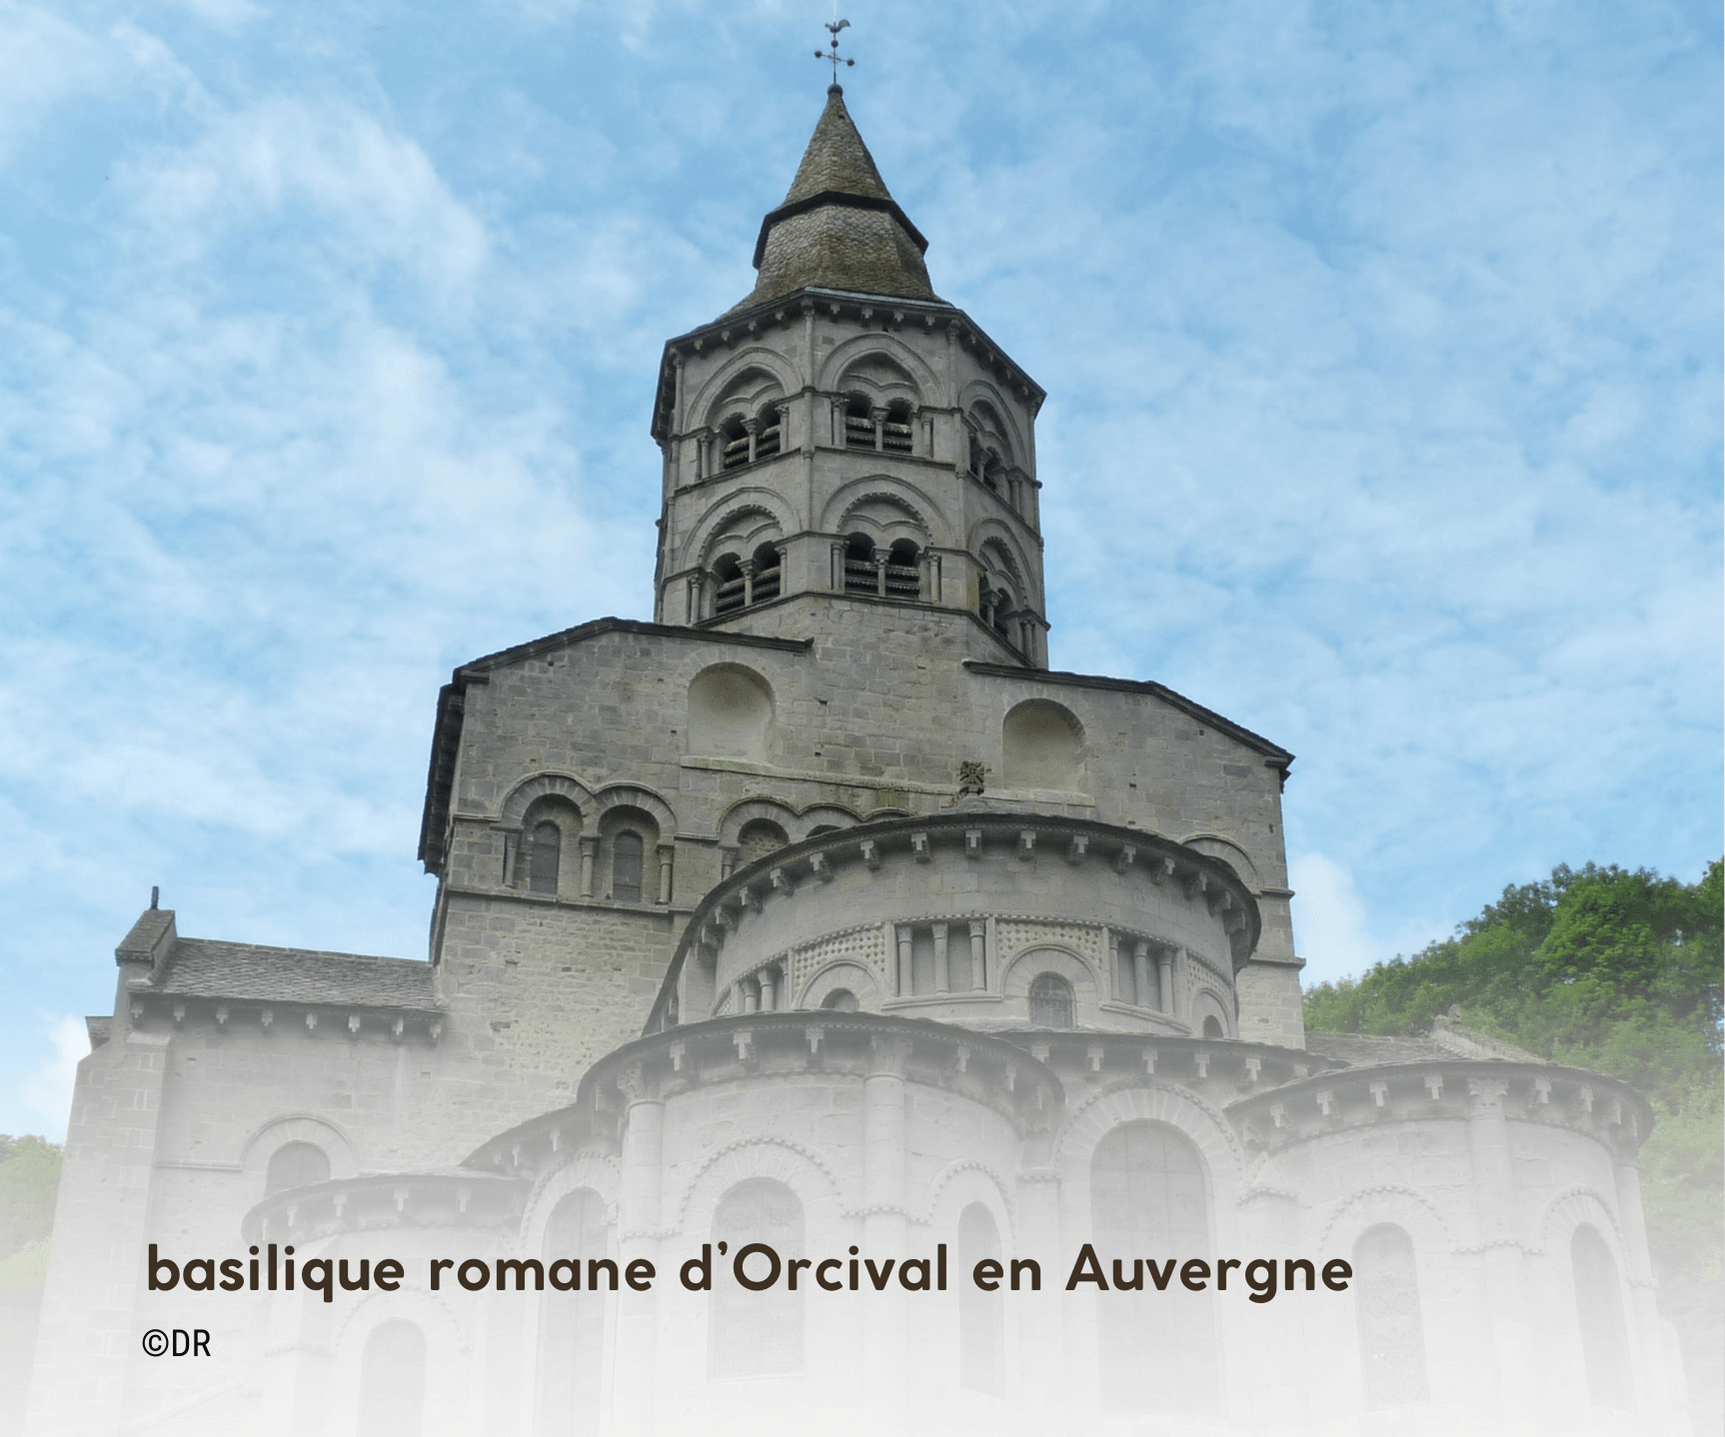 basilique romane d'Orcival en Auvergne